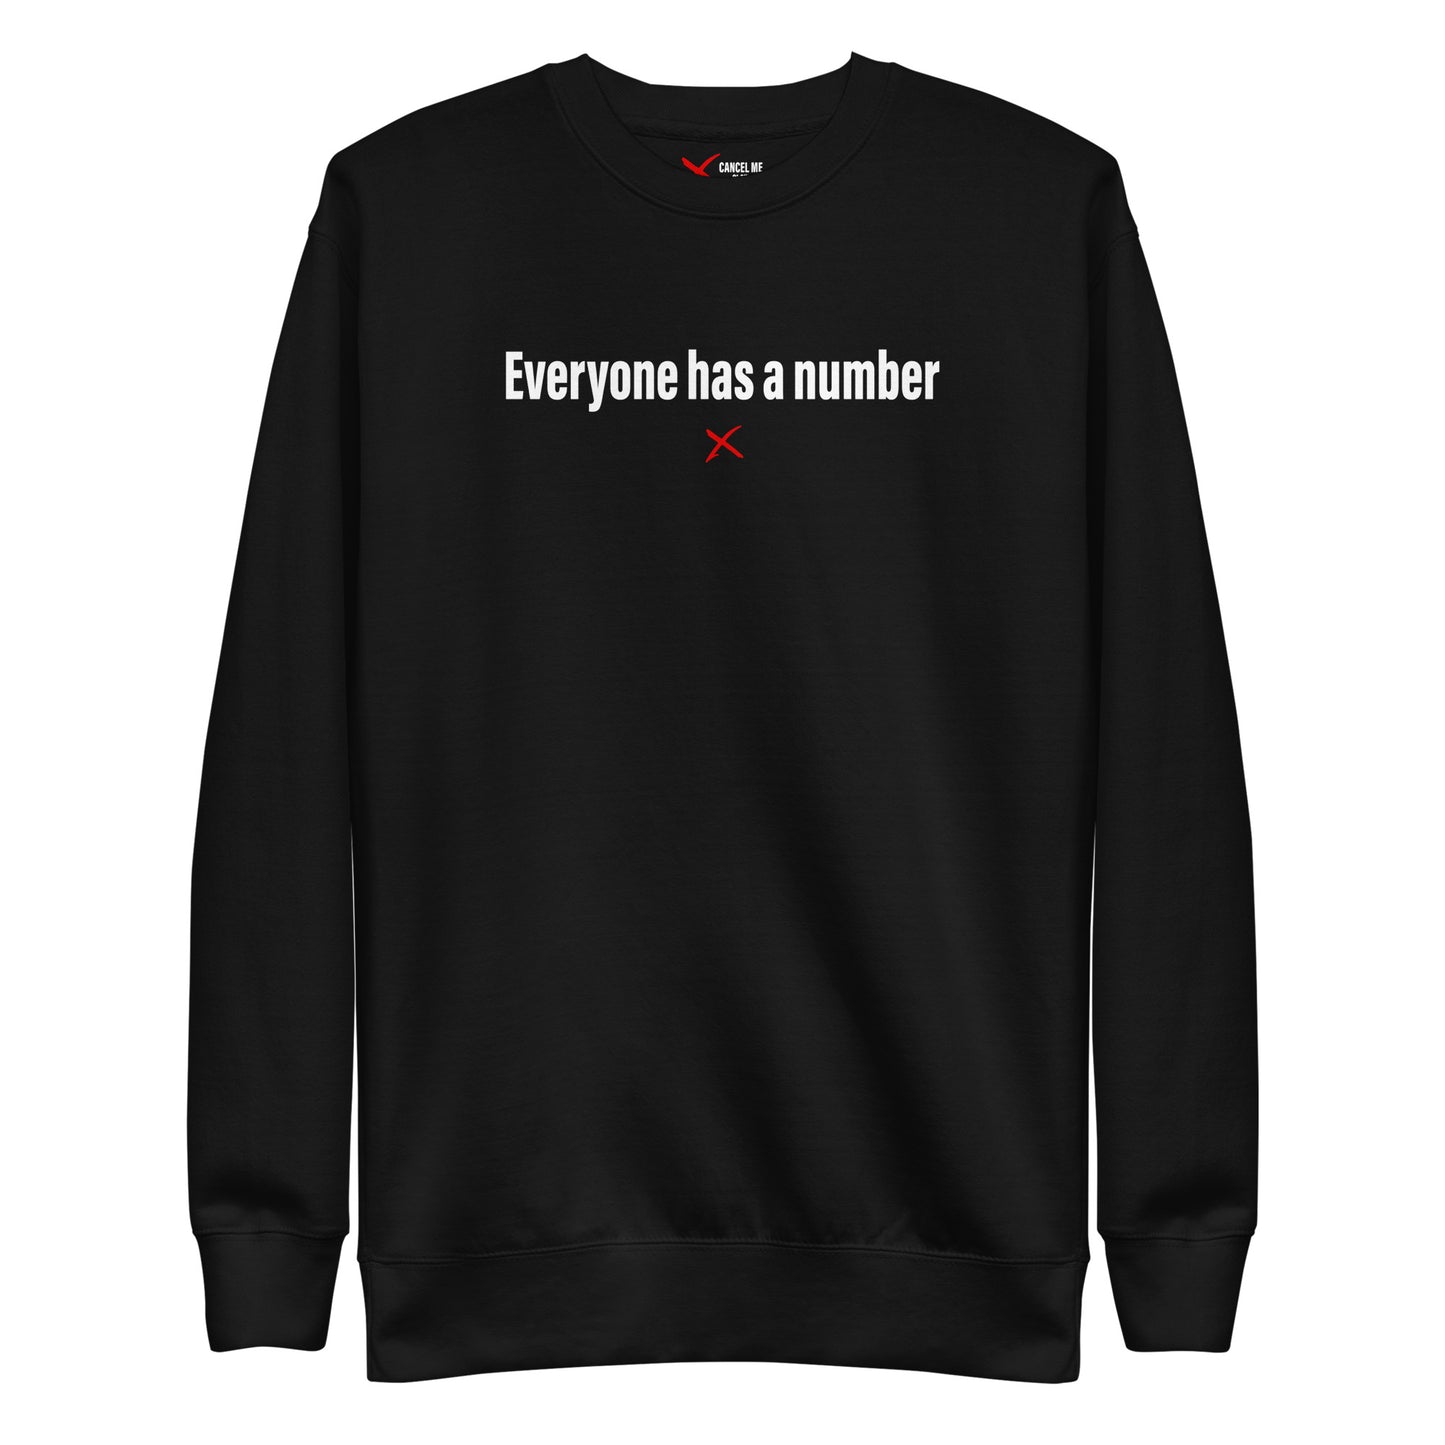 Everyone has a number - Sweatshirt